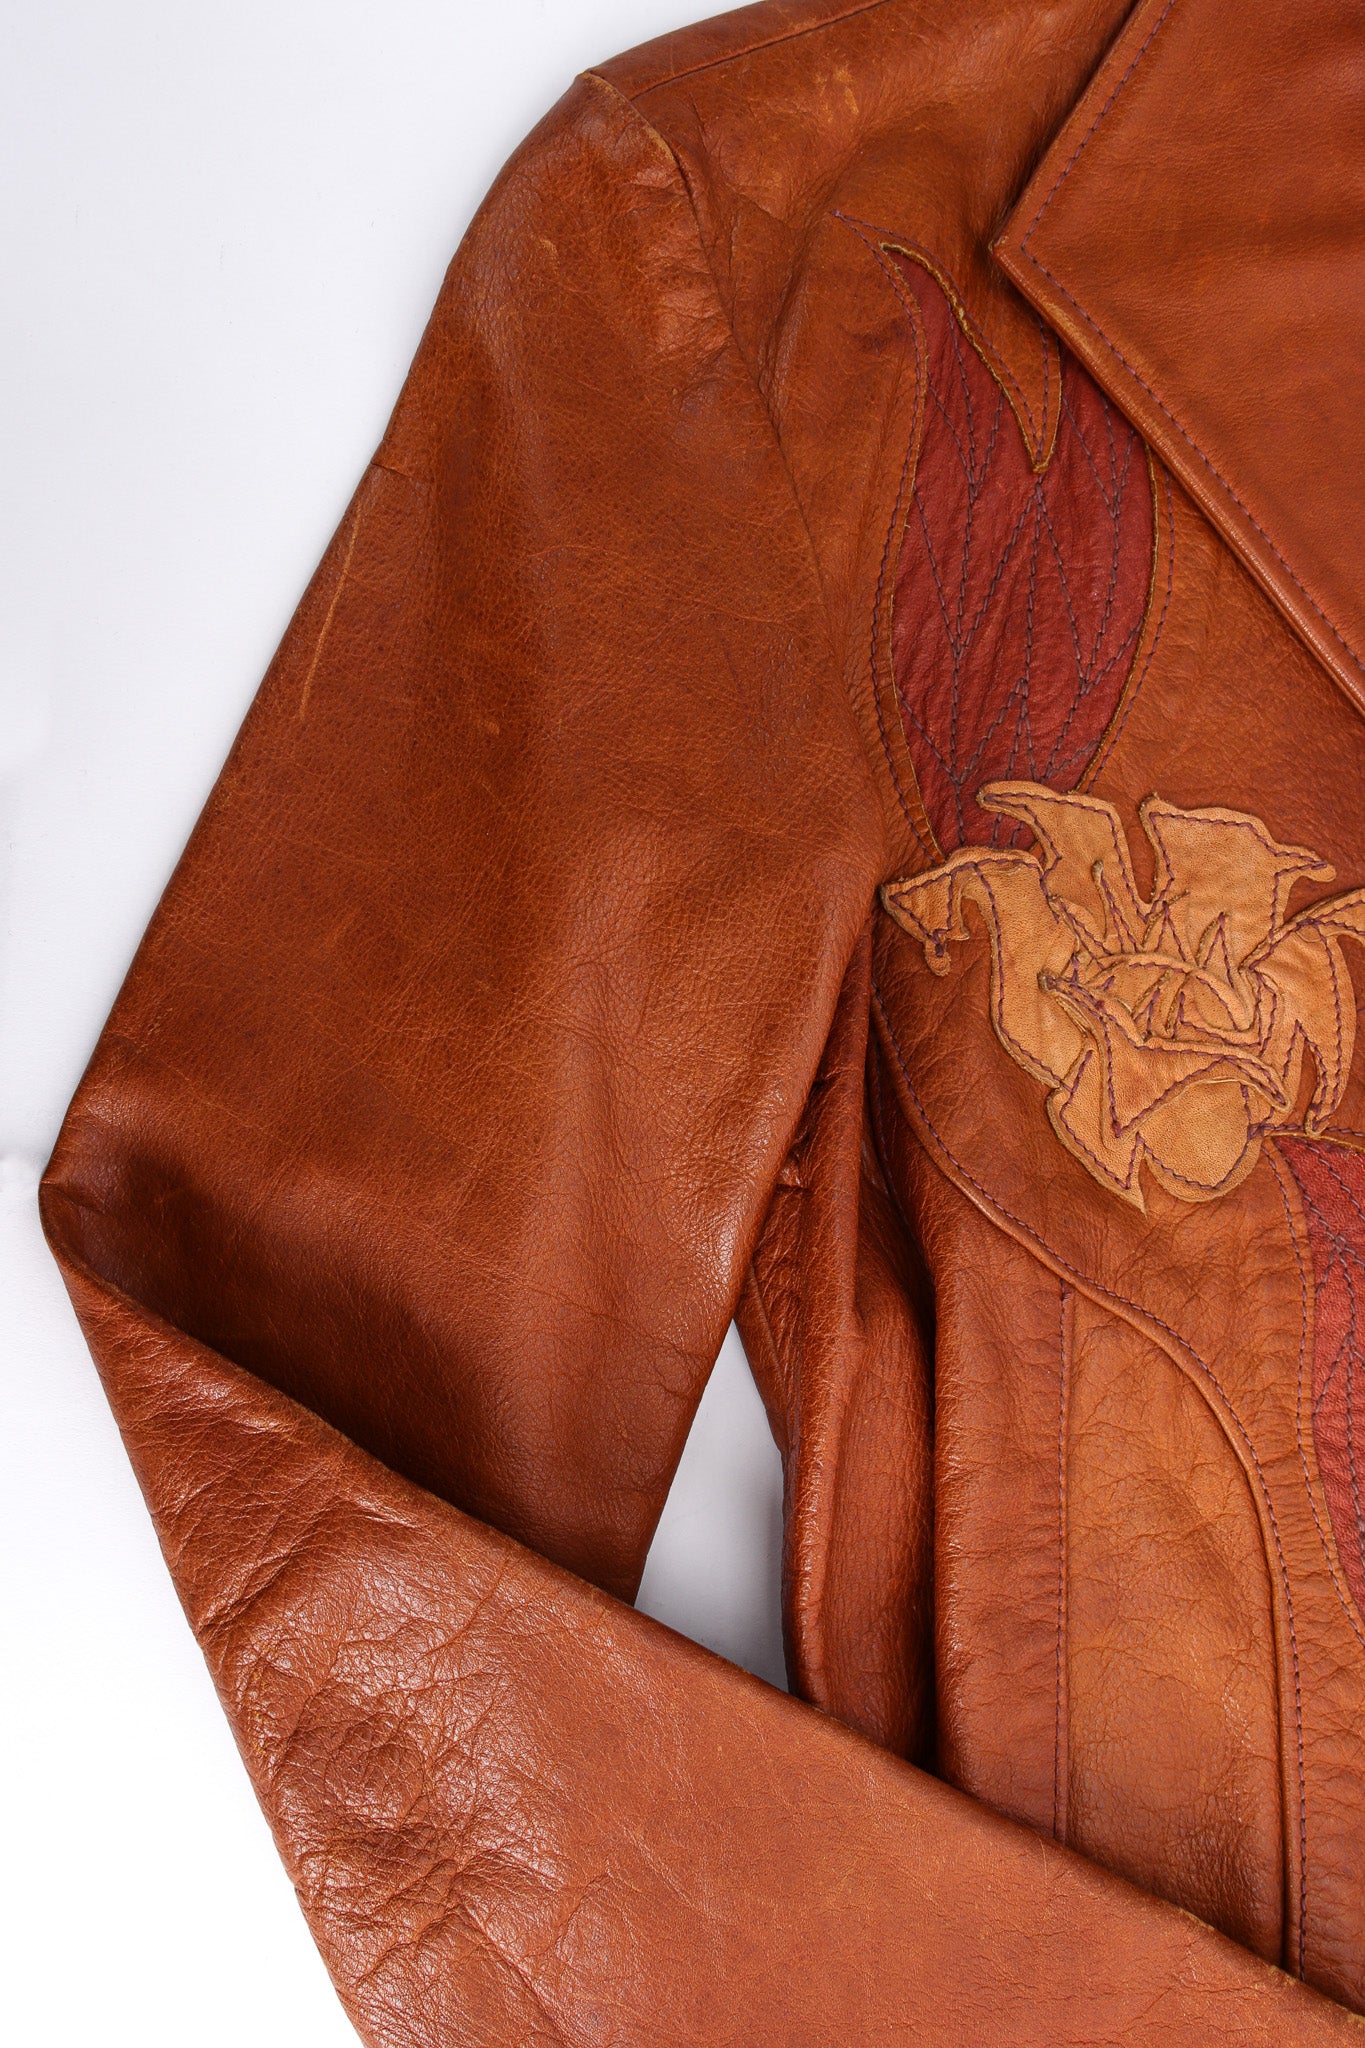 Vintage East West Musical Instruments Floral Appliqué Leather Jacket shoulder discoloration @ Recess LA